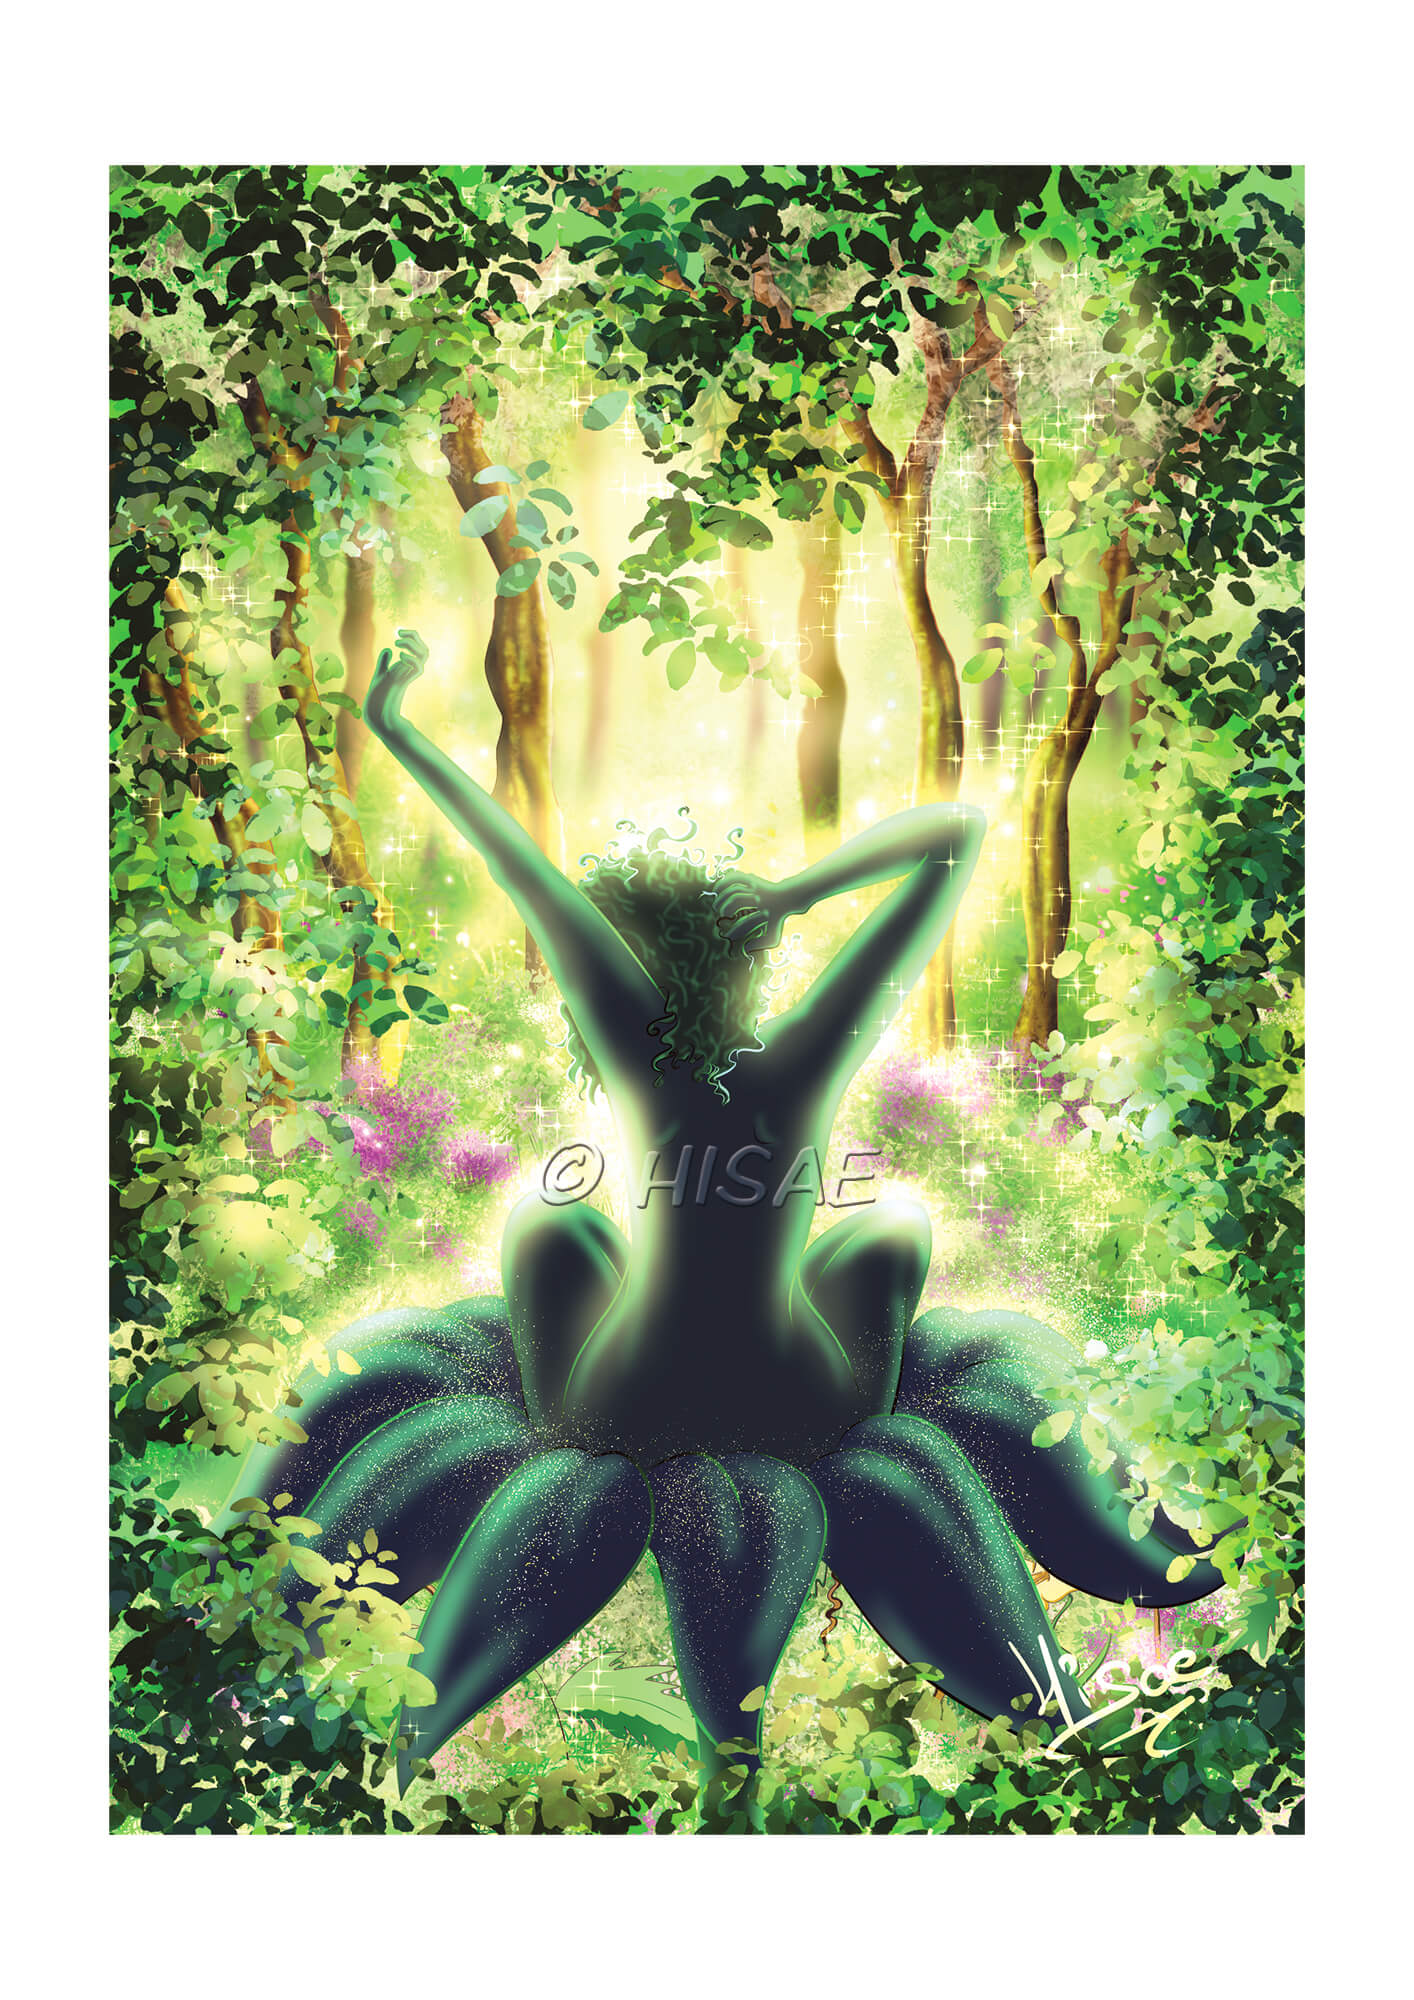 Dessin numérique représentant Dame Nature assise dans une fleur en train de s'éveiller dans une forêt @Hisae illustrations